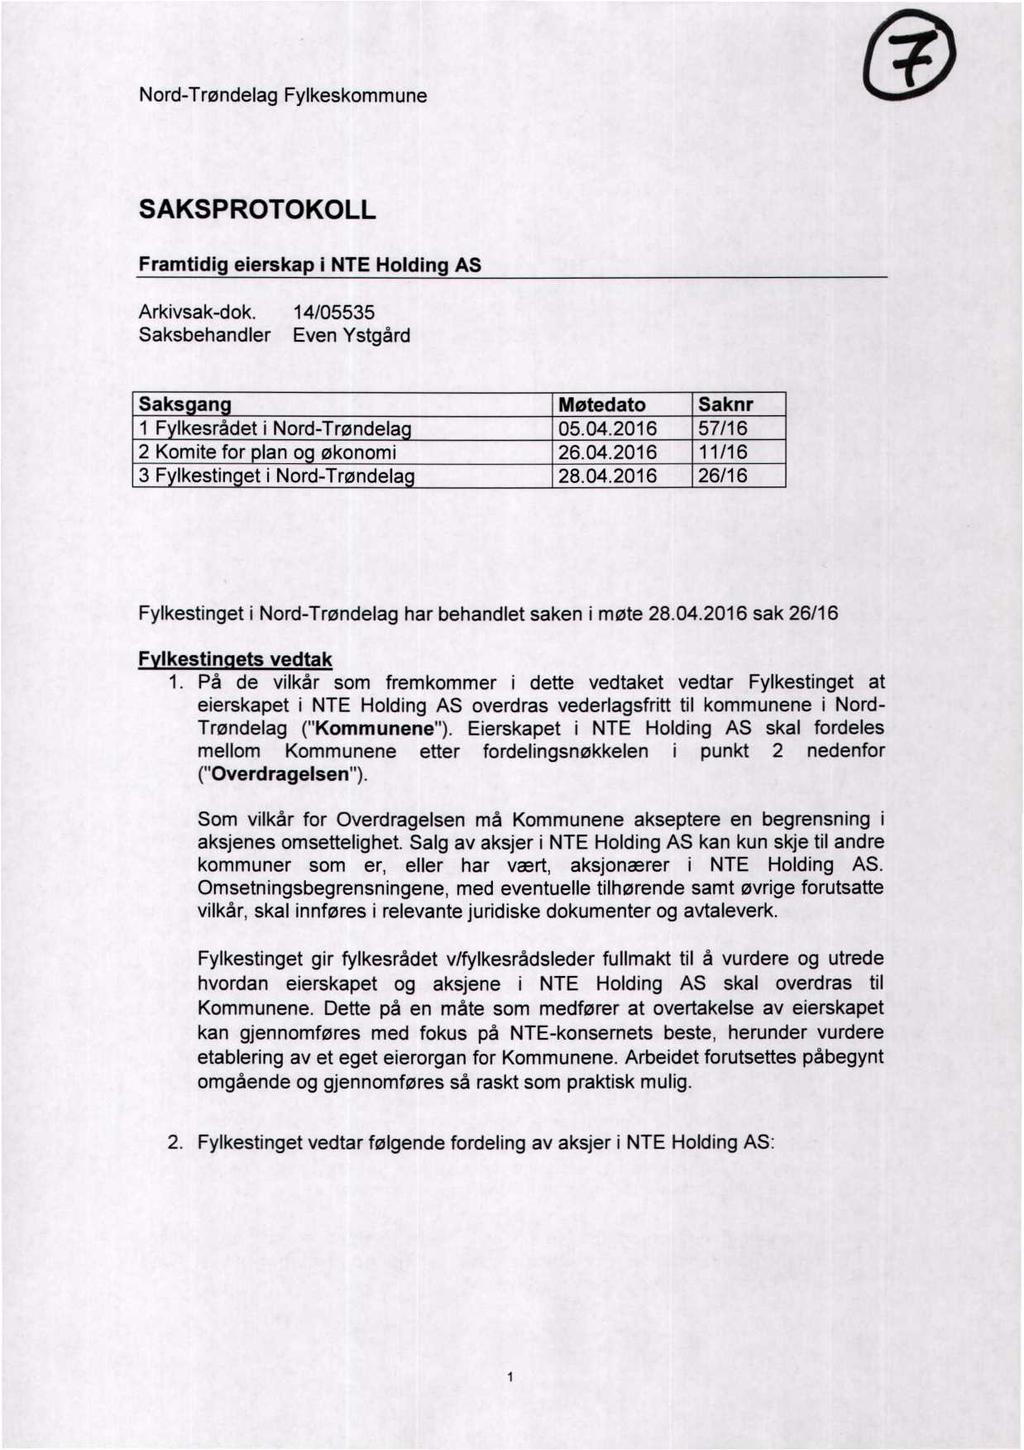 Nord-Trøndelag Fylkeskommune SAKSPROTOKOLL Framtidig eierskap i NTE Holding AS Arkivsak-dok. 14/05535 Saksbehandler Even Ystgård Saksgang Møtedato Saknr 1 Fylkesrådet i Nord-Trøndelag 05.04.